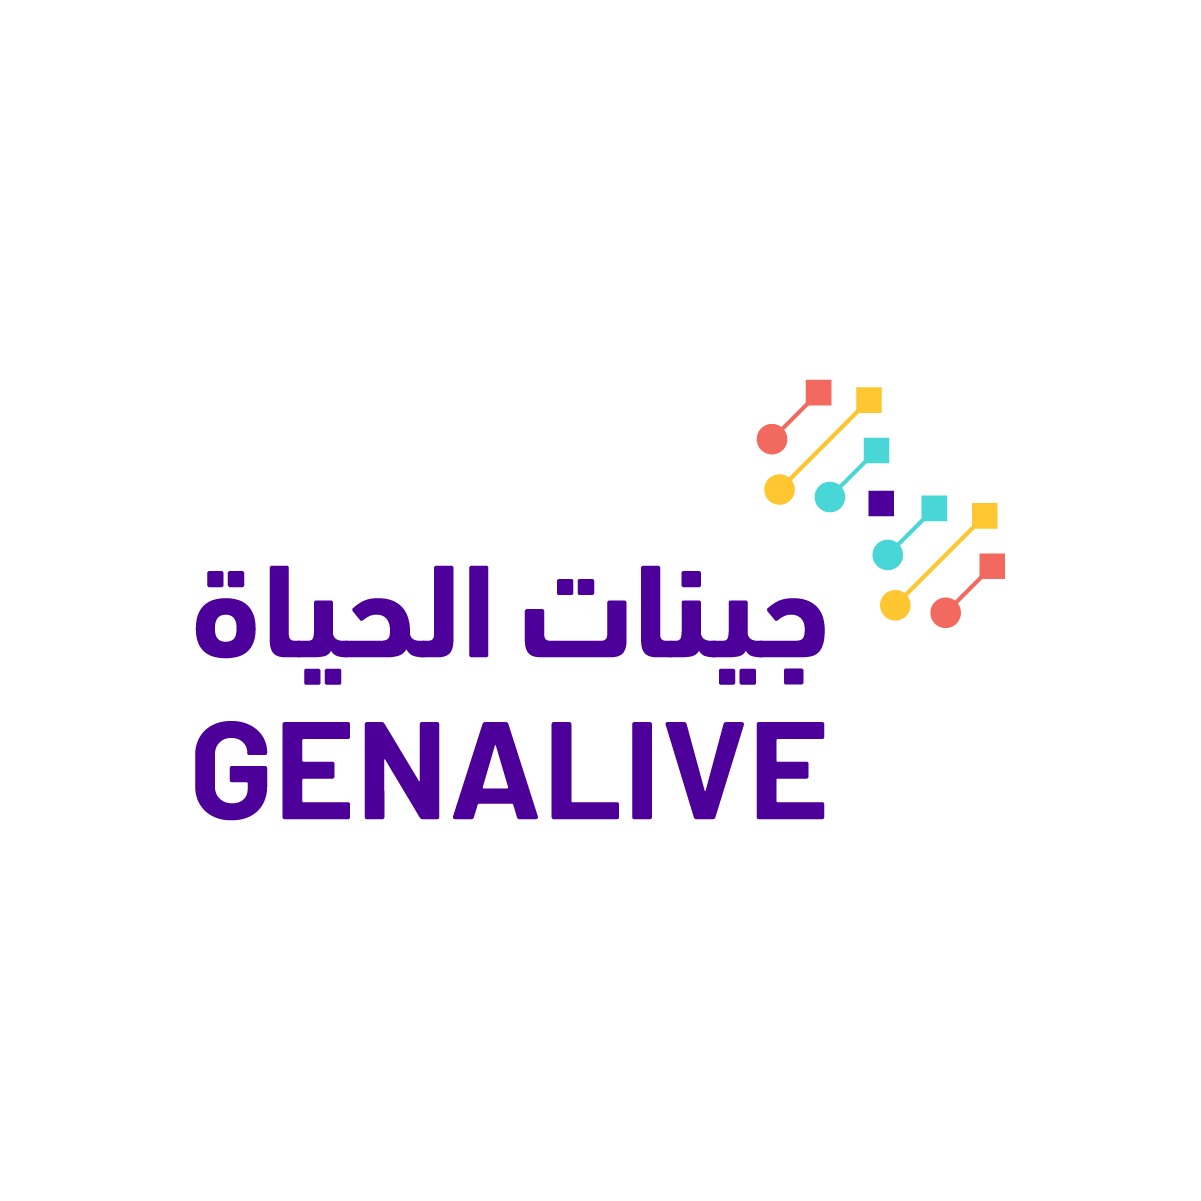 genalive logo